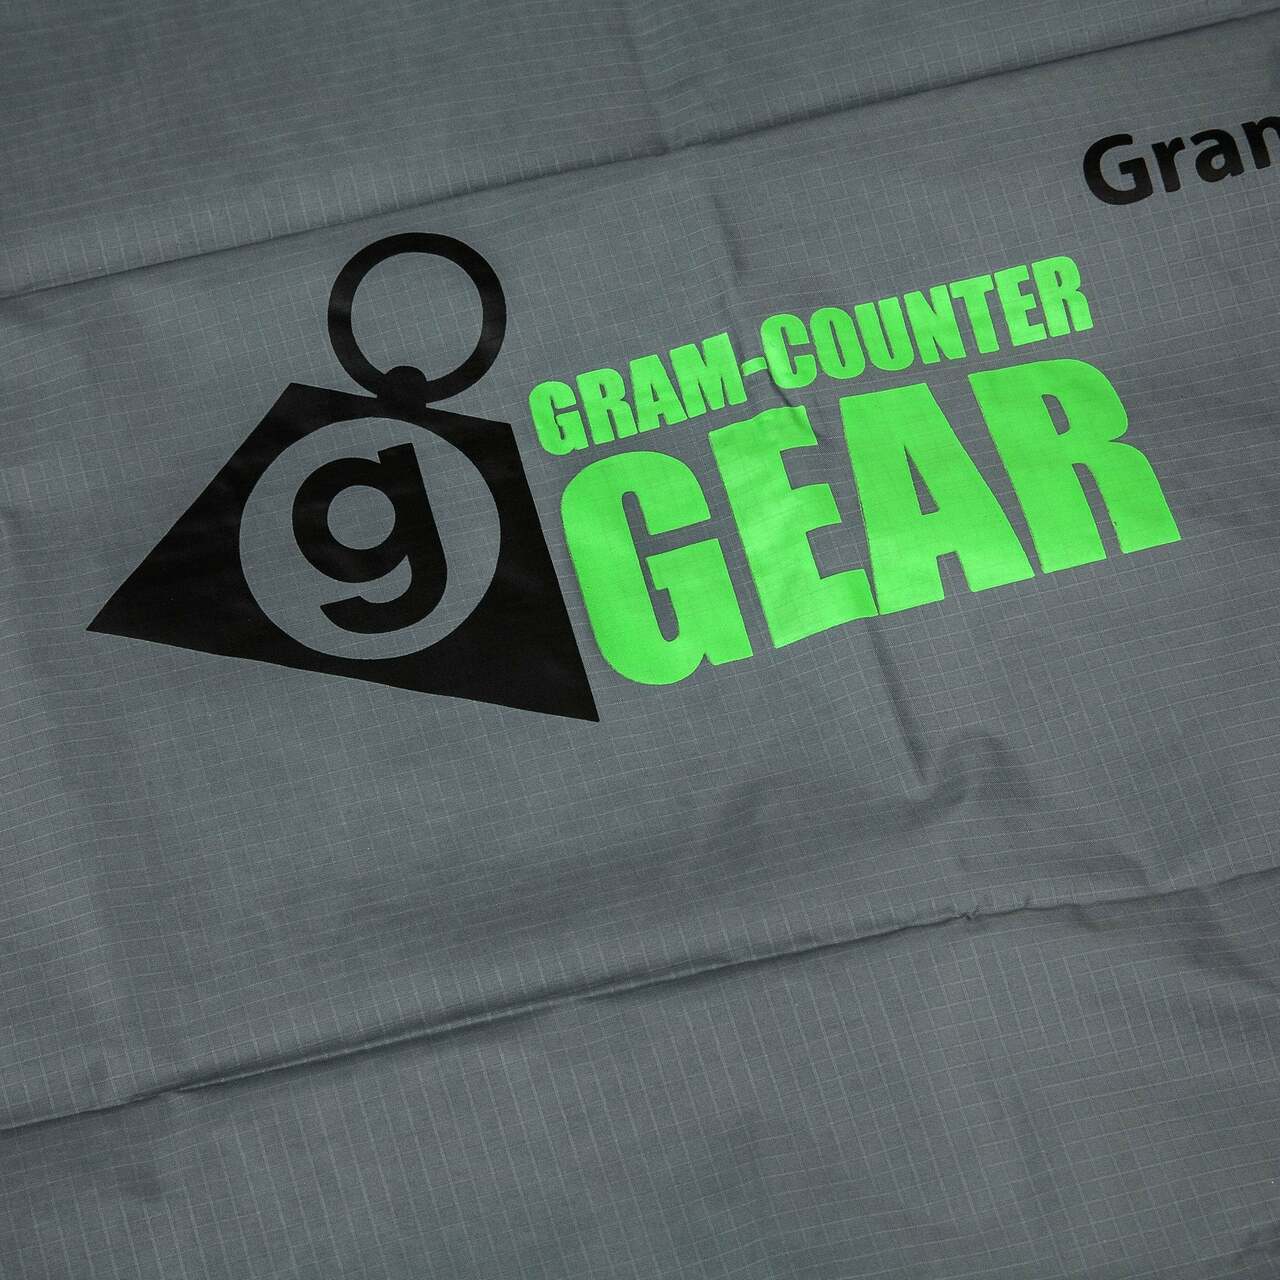 Gram-Counter Gear Ultra Groundsheet